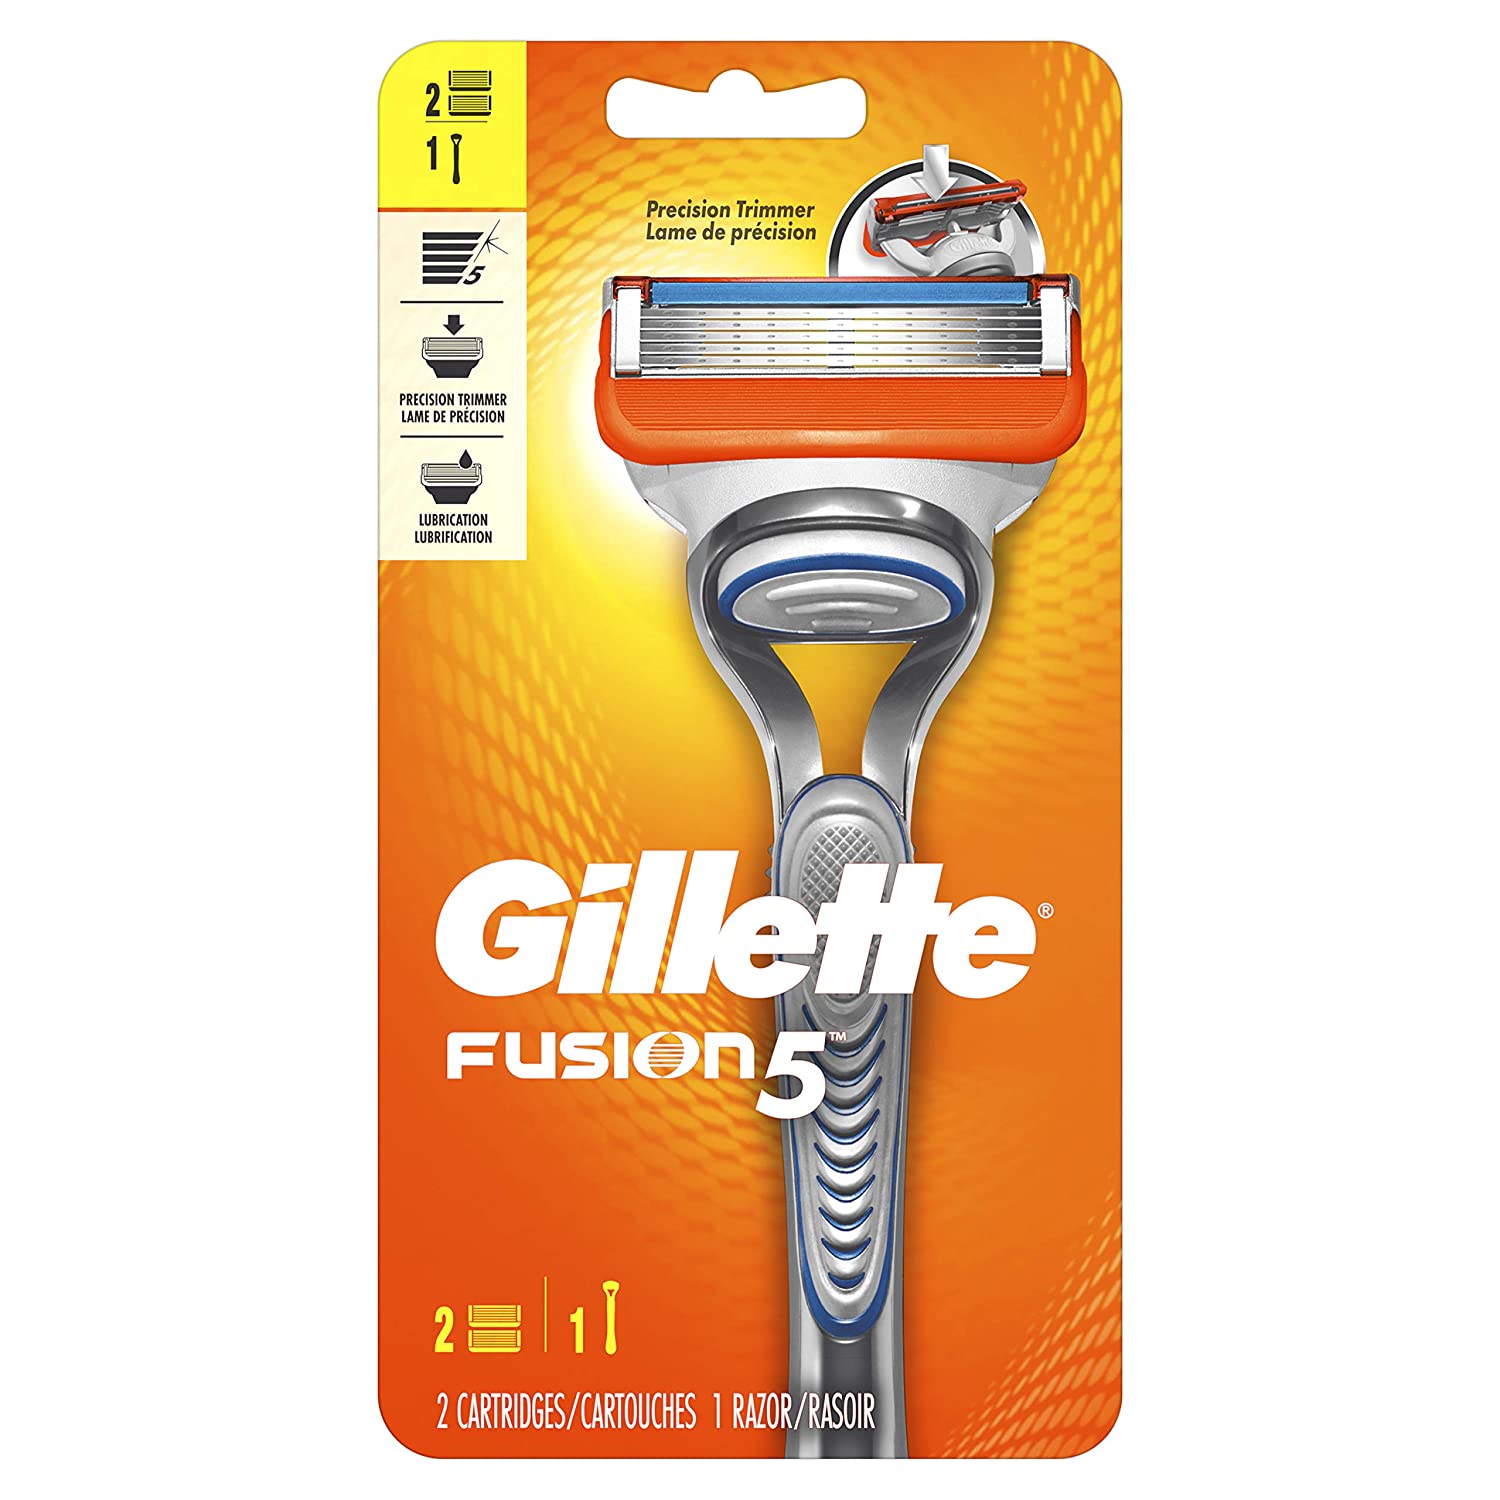 Gillette Fusion5 男士5层刀片剃须刀+2个替换刀头 